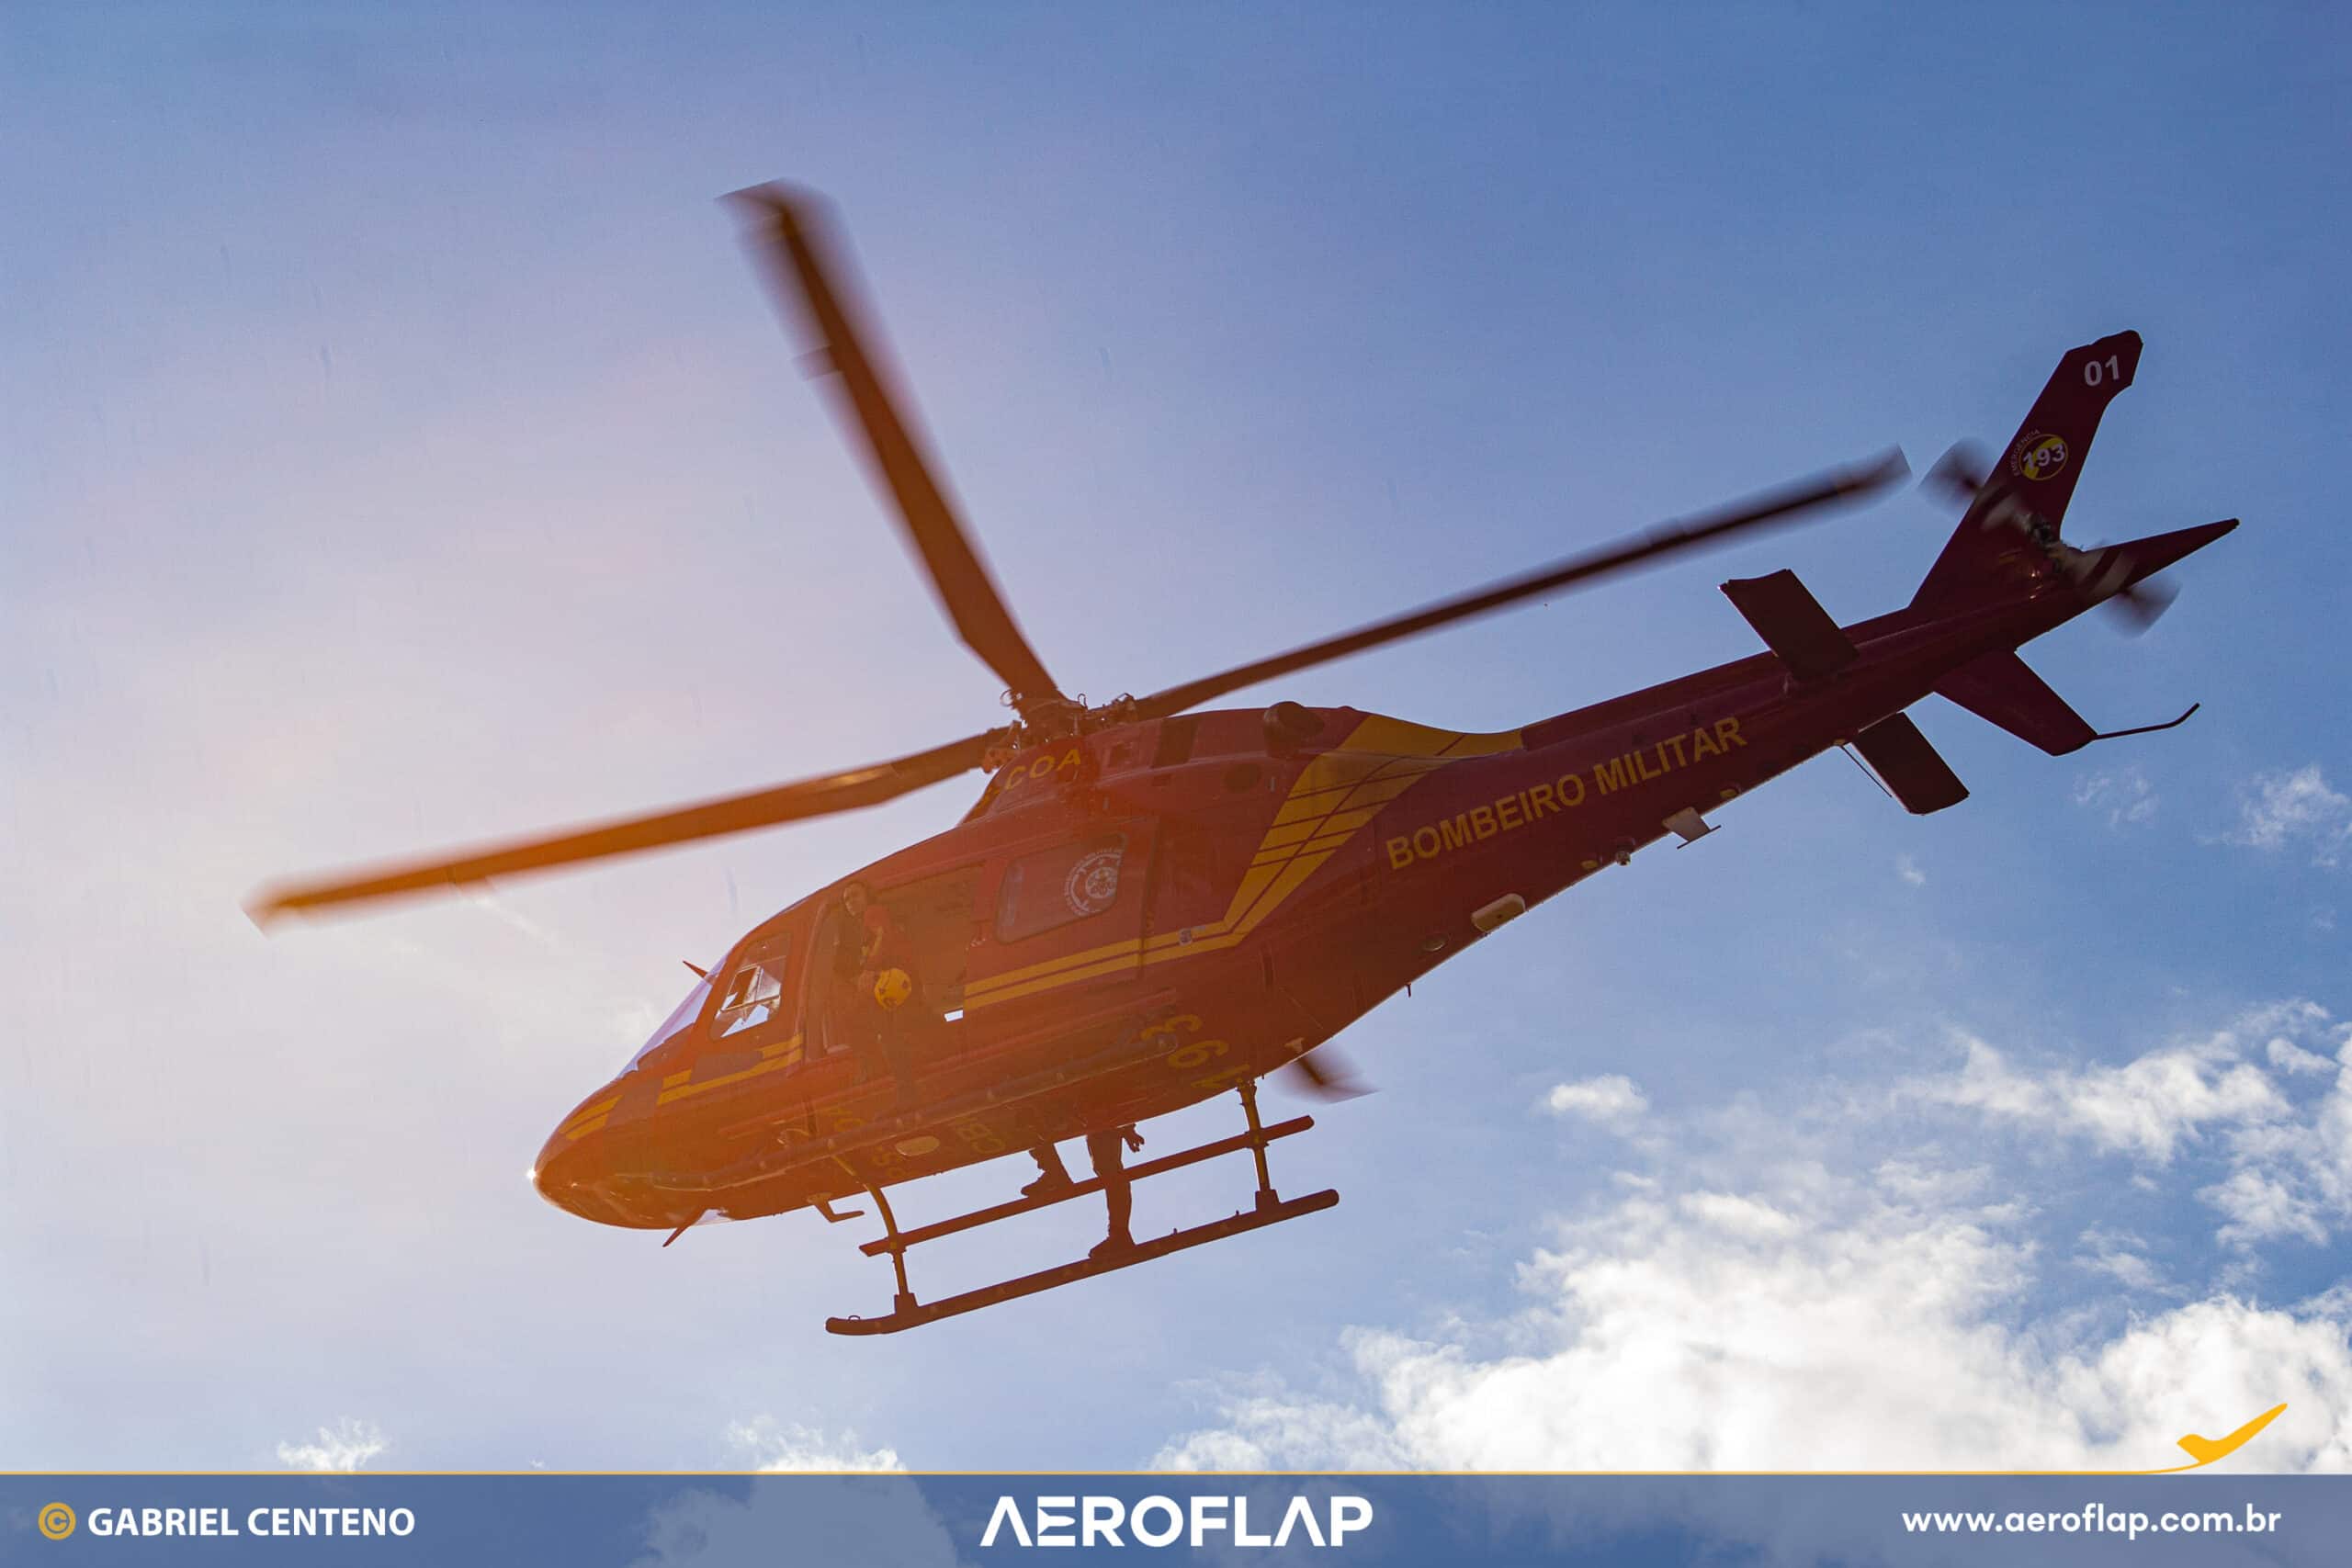 Aw119 Koala del Cuerpo de Bomberos Militares de Rio Grande do Sul (CBMRS). Denominado Rescate 01, el helicóptero fue uno de los primeros aviones en participar en las acciones durante las inundaciones. Foto: Gabriel Centeno.